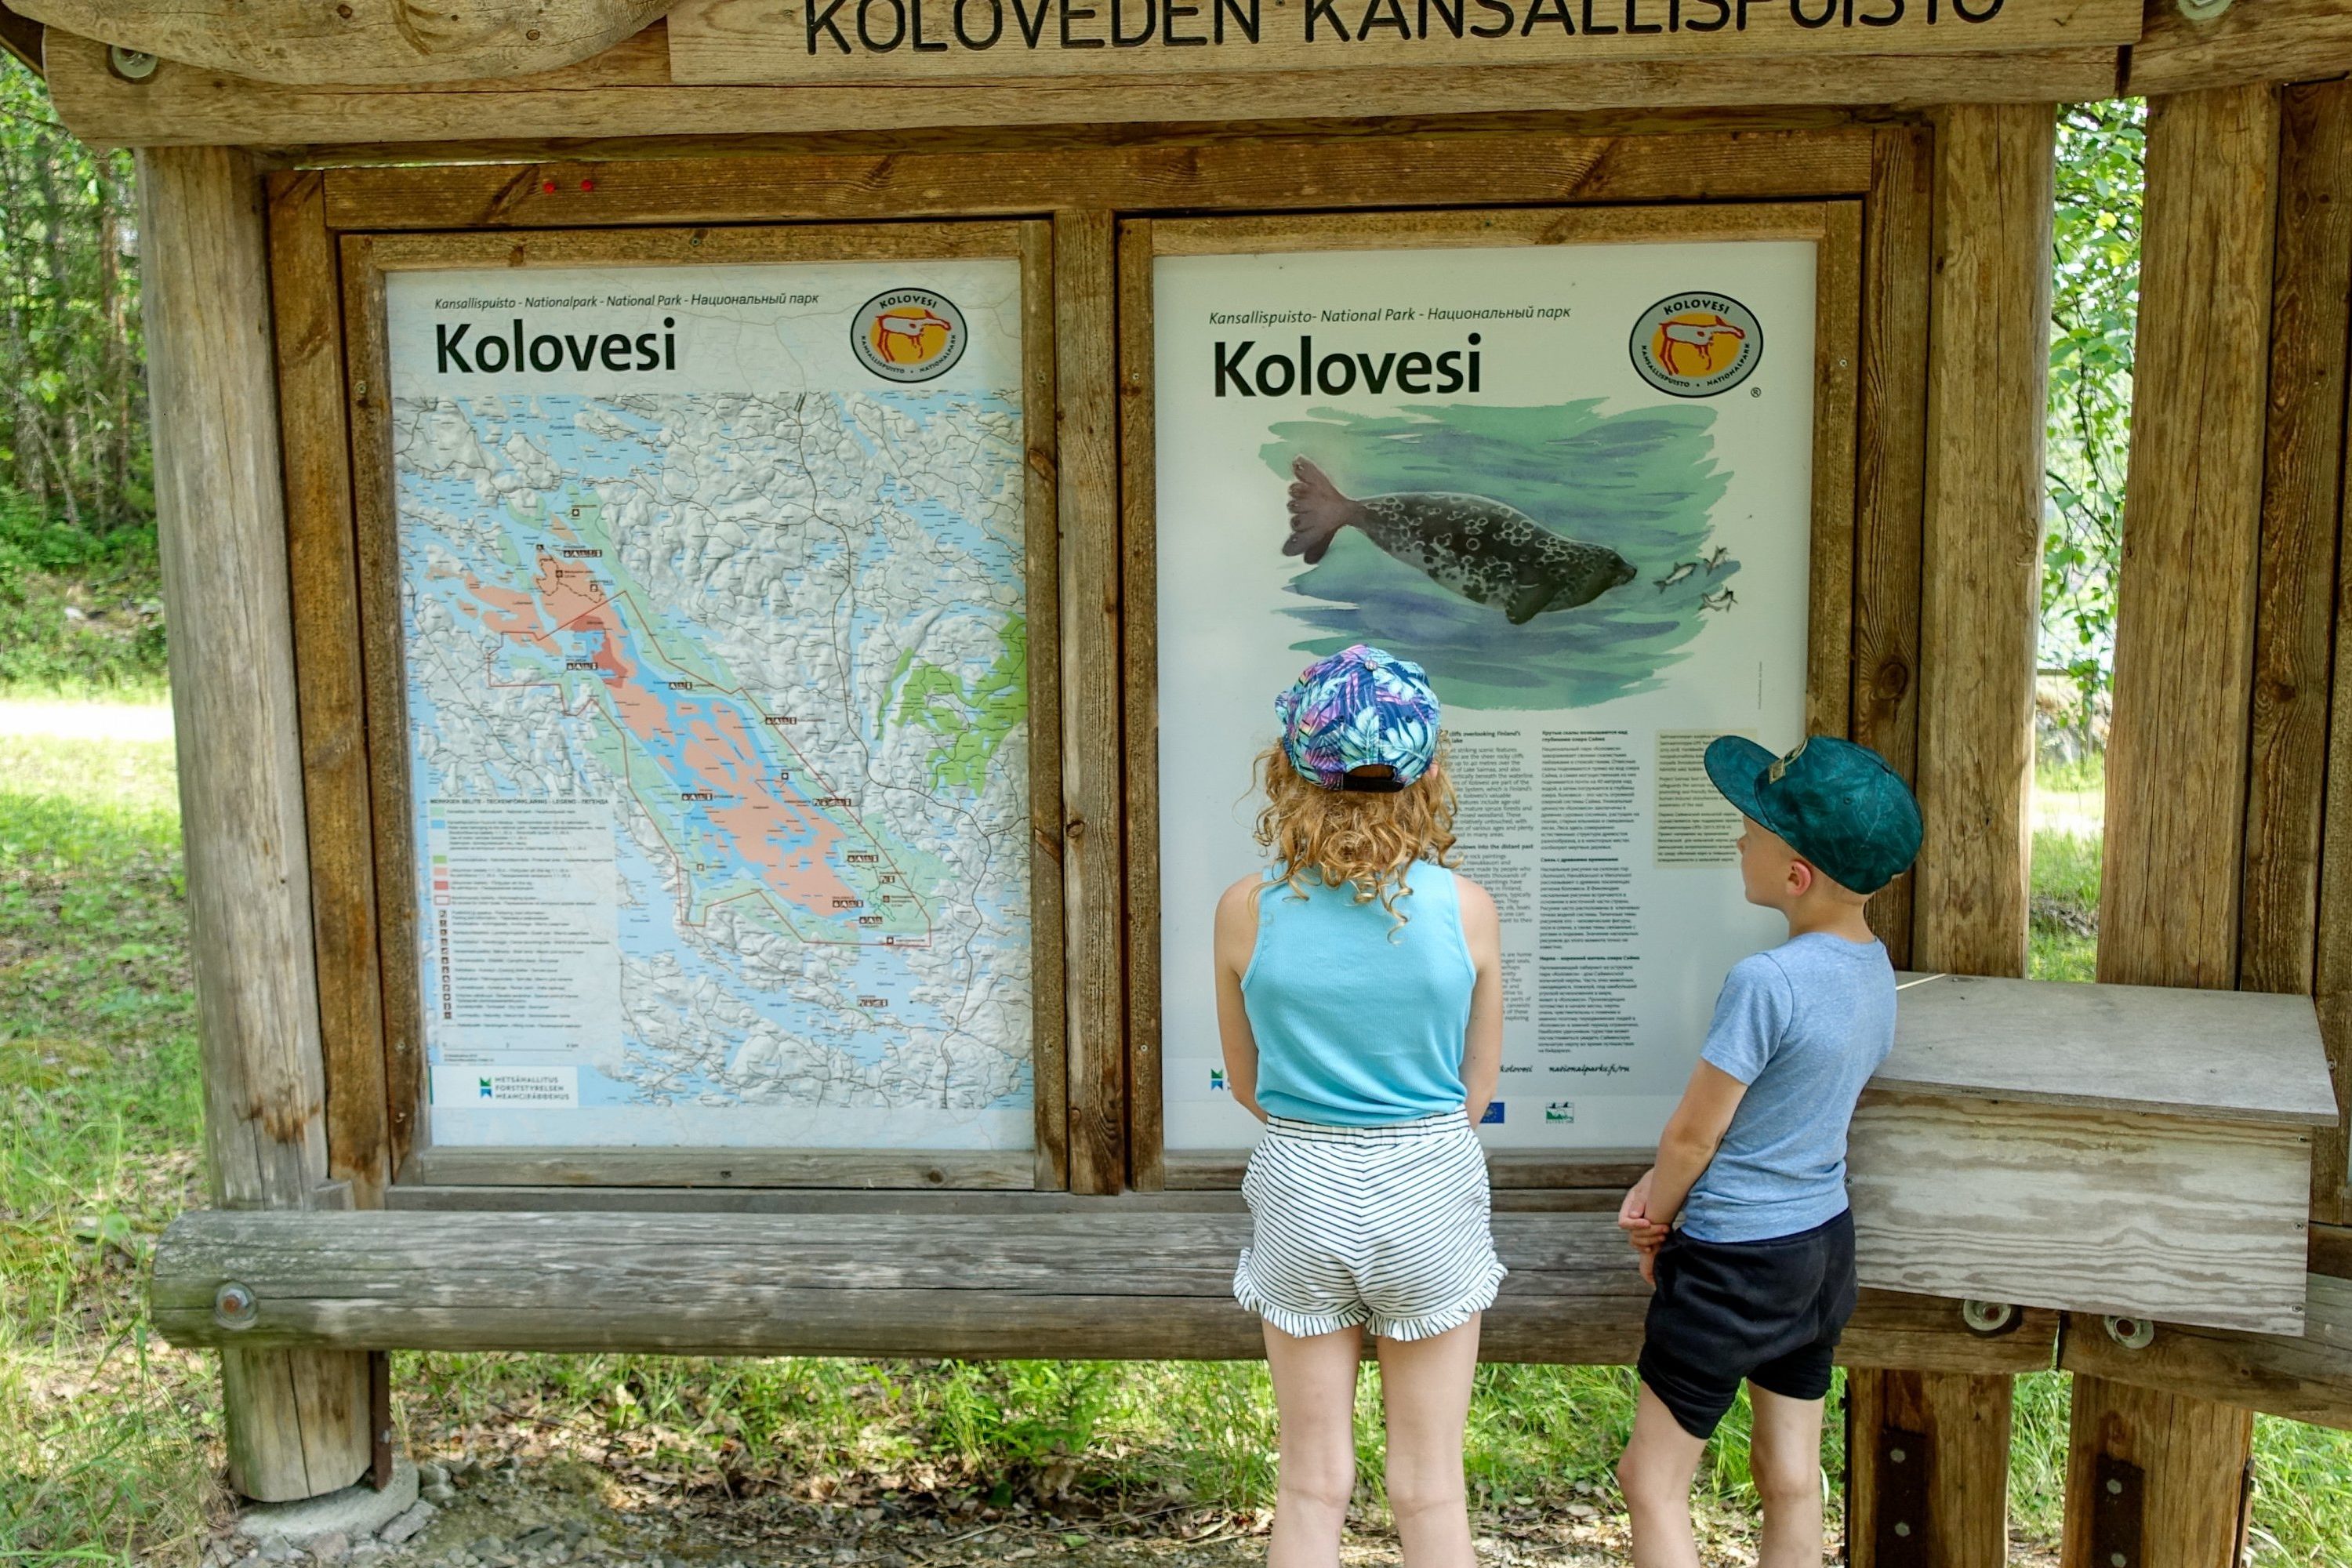 VK-koloveden-kansallispuisto-kolovesi